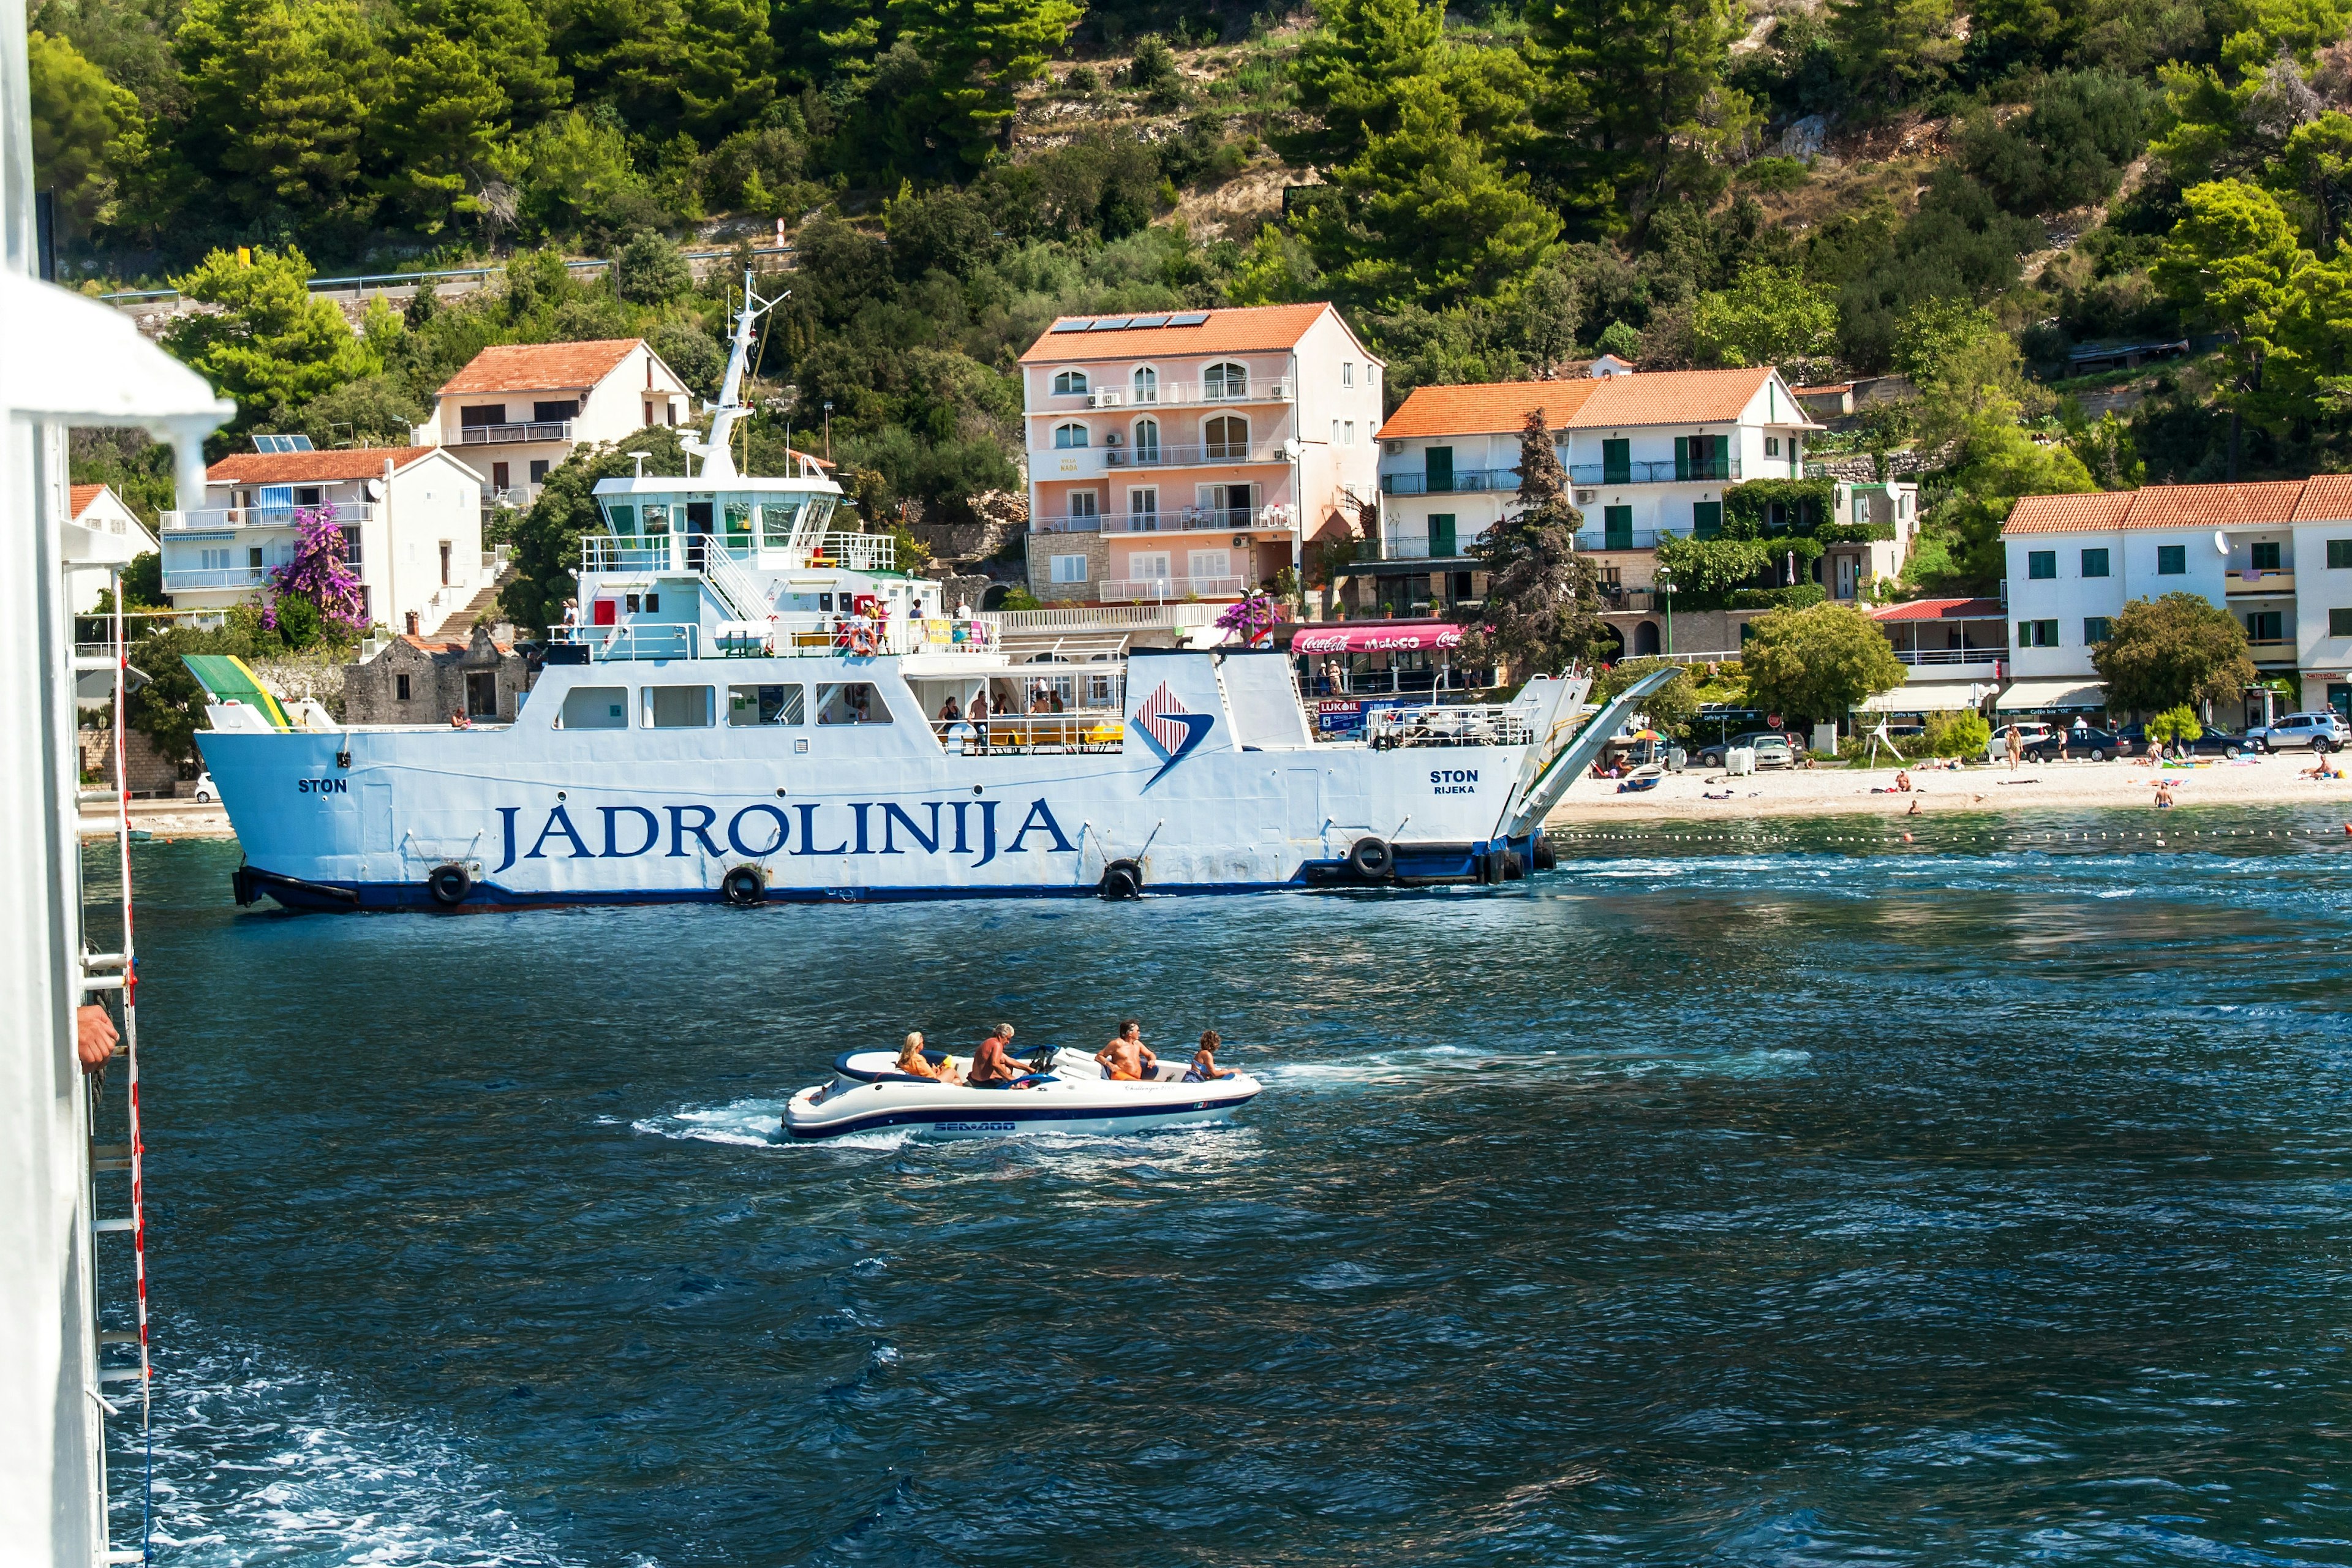 September 8, 2018: The Jadrolinija ferry entering Drvenik from Hvar Island.